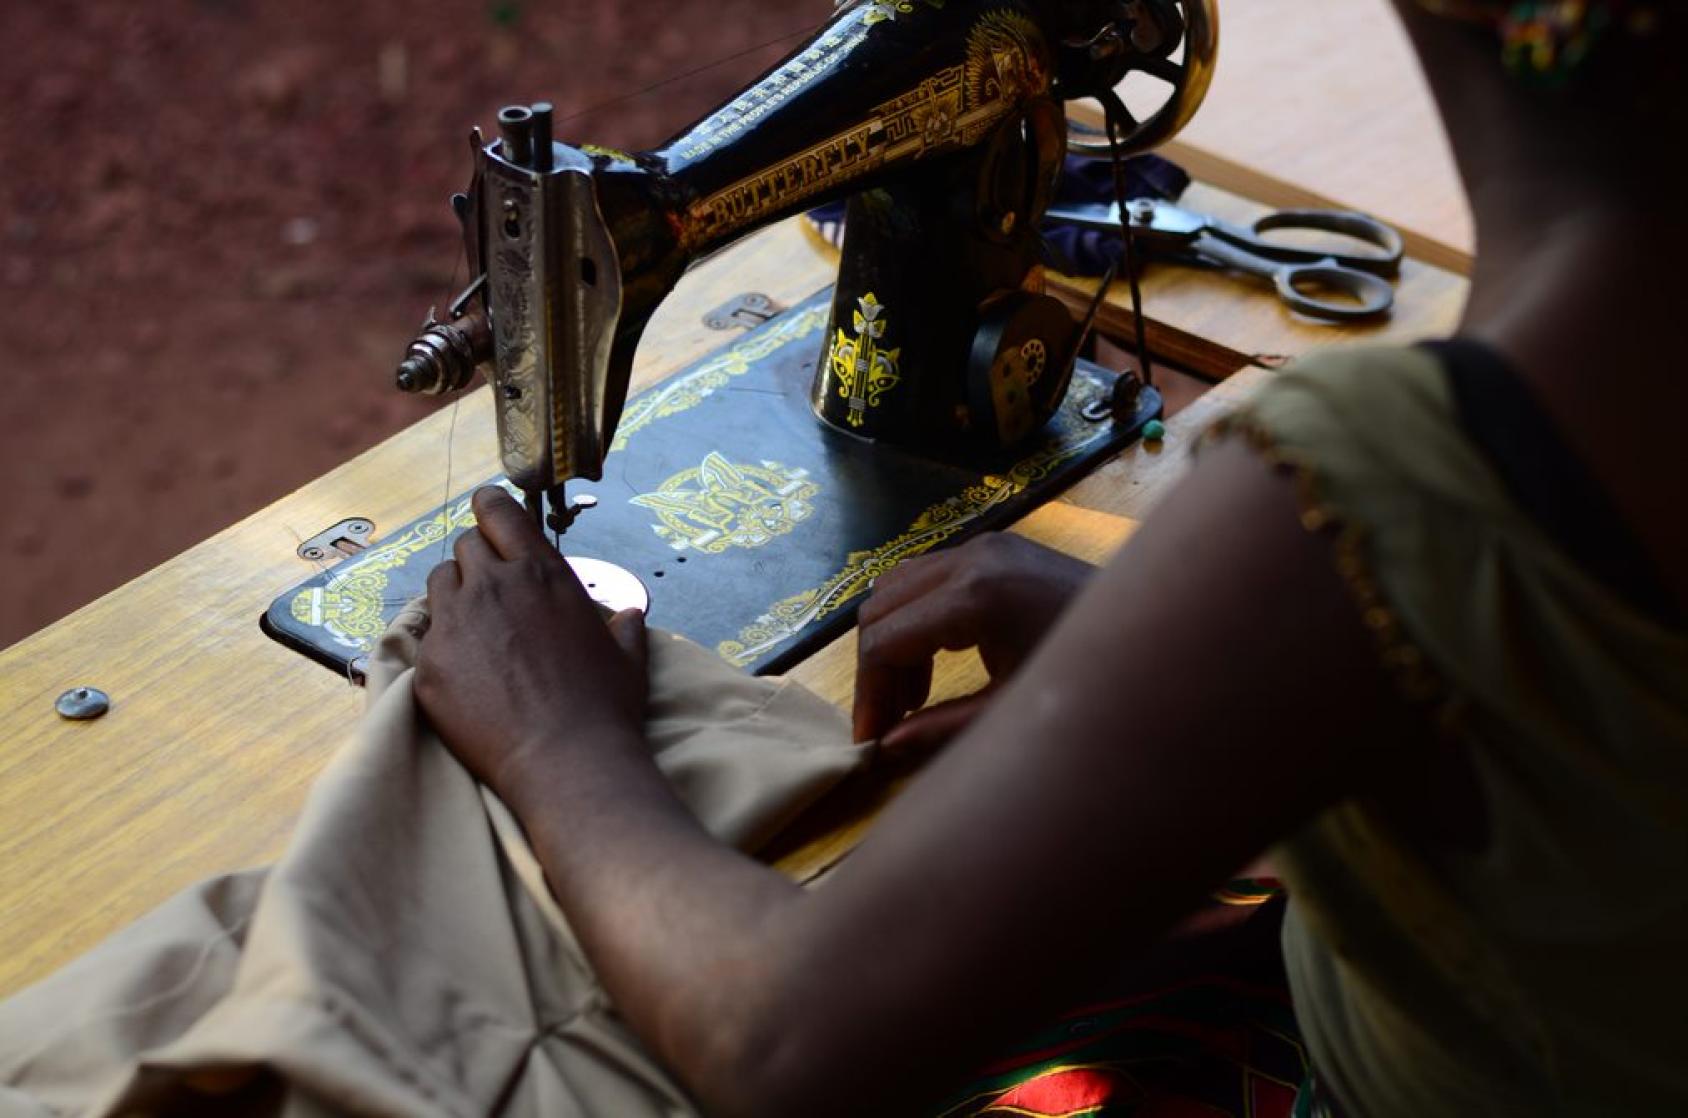 Imagen de las manos de una chica mientras trabaja en una máquina de coser.